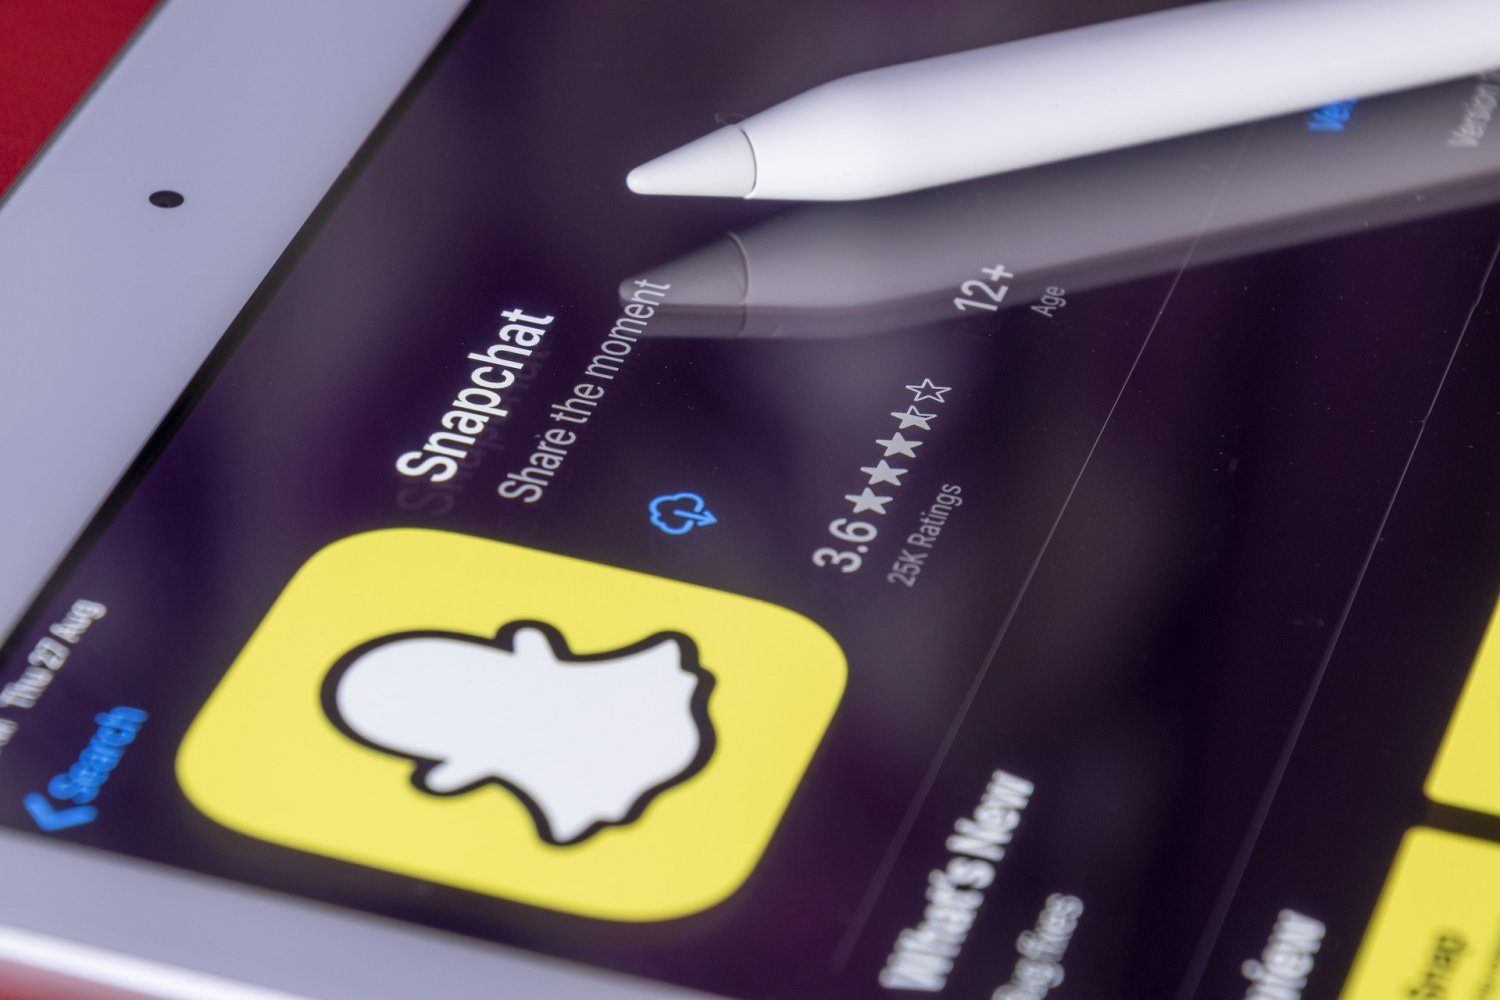 Das größte Snapchat-Update seit Jahren. Die App wird zu einer visuellen Suchmaschine 58